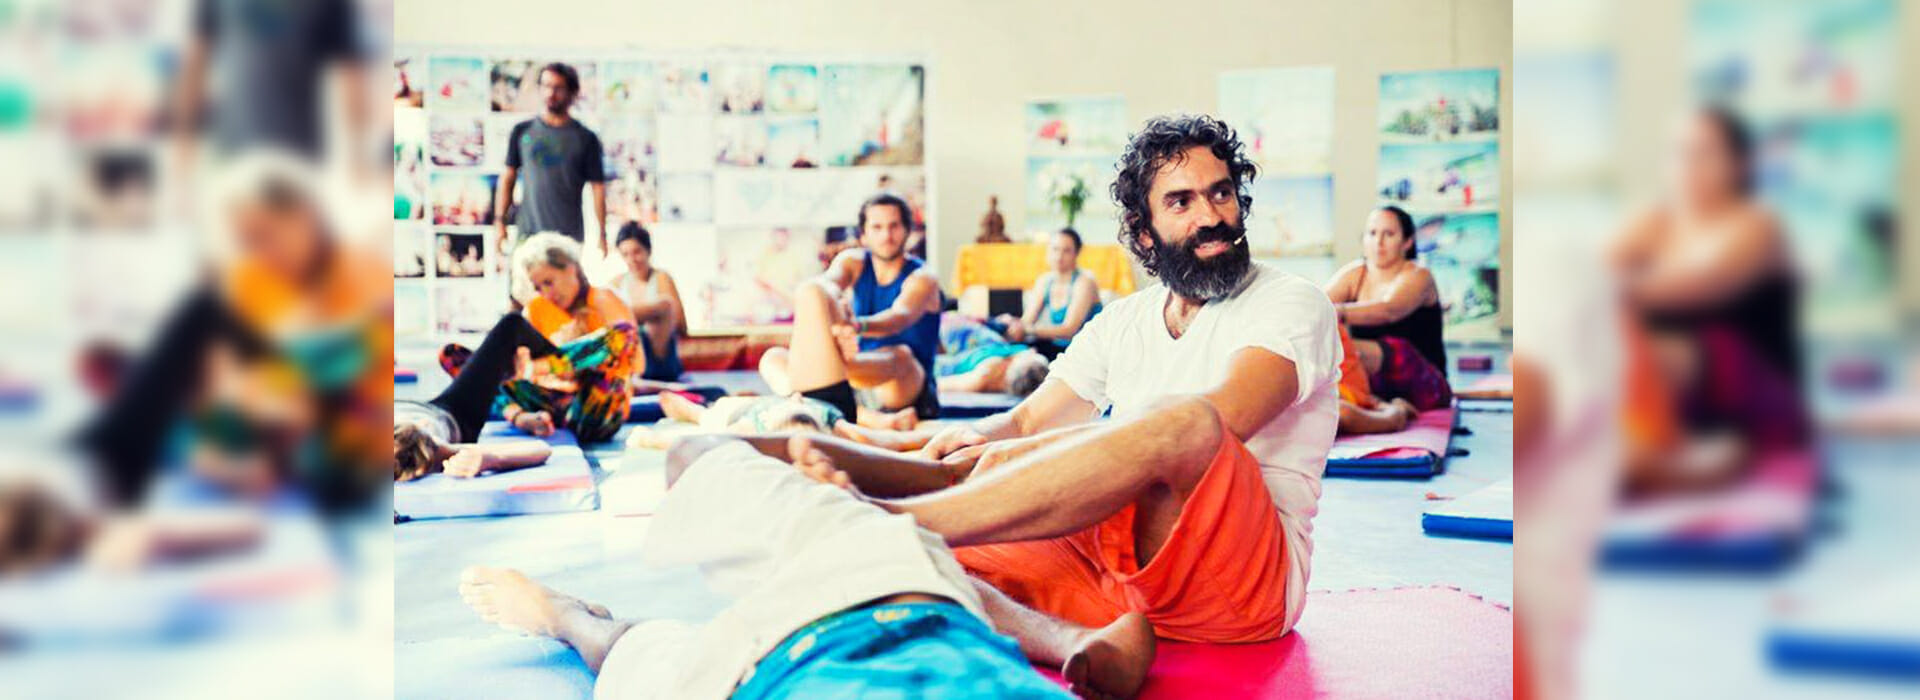 Spirit Yoga Lehrer-Ausbildung – Die Ausbildung und Weiterbildung für Yogalehrer in Berlin